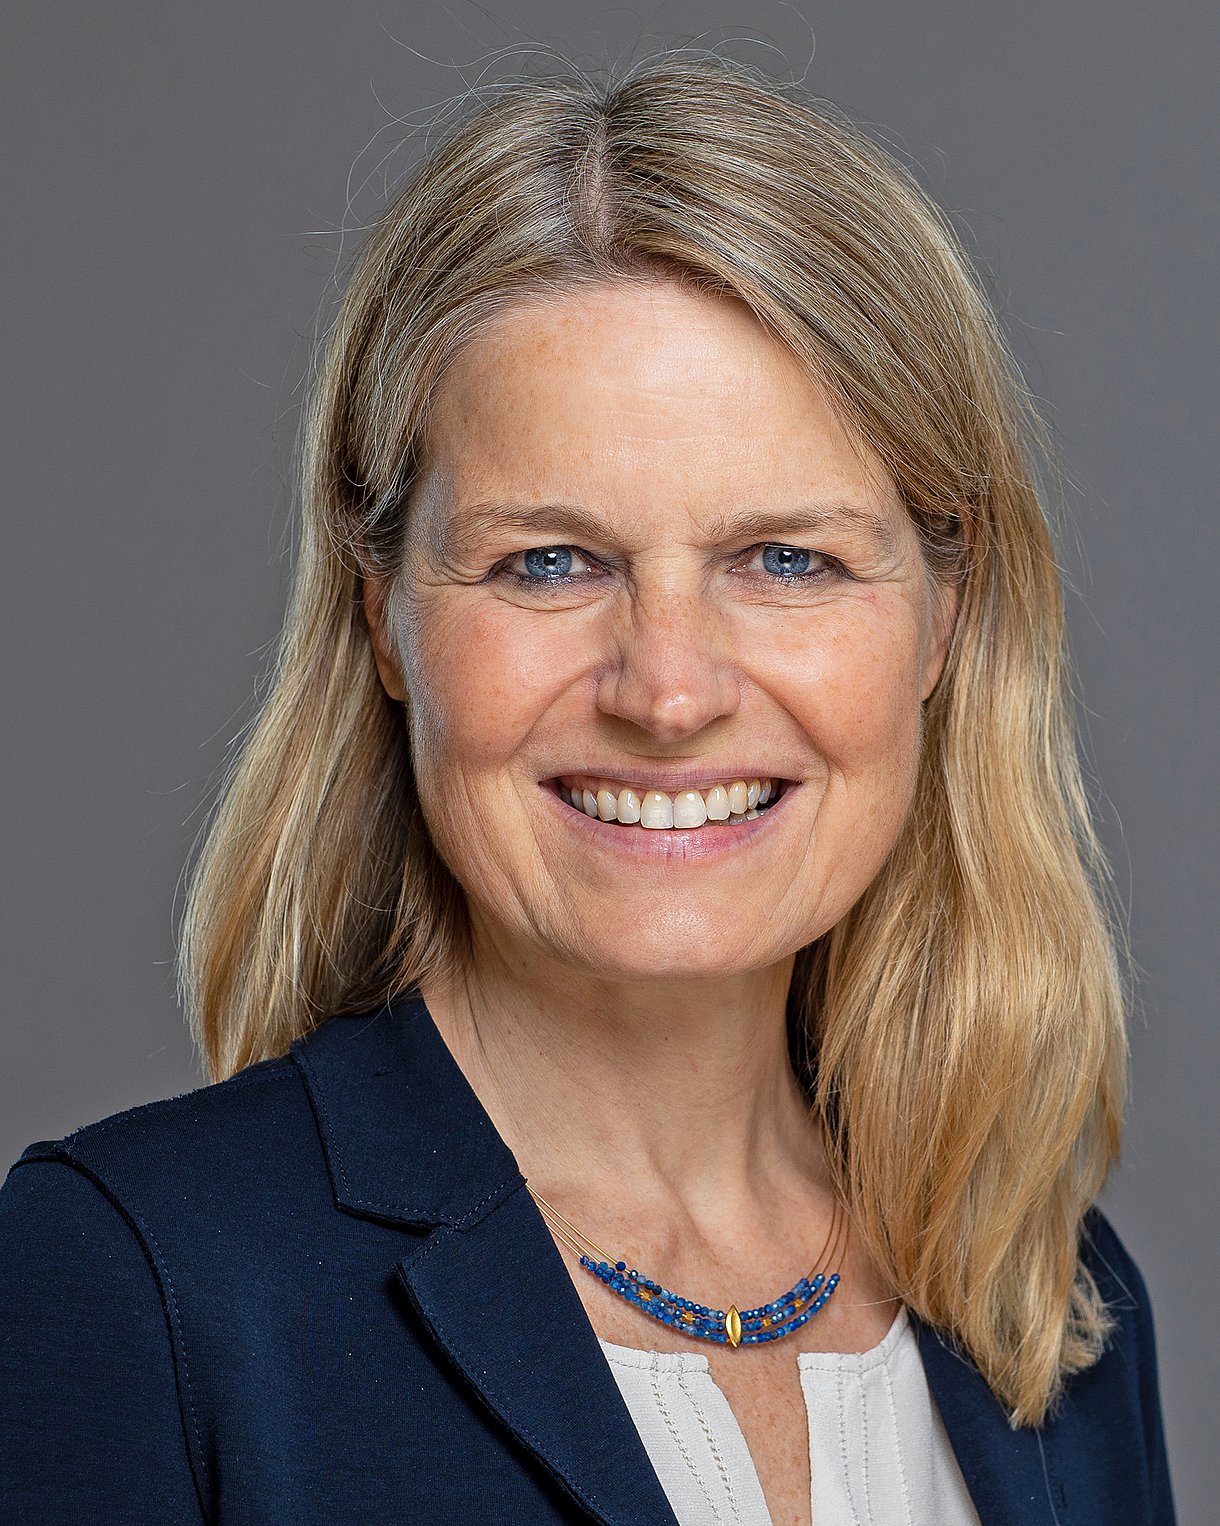 Foto: Porträt von Prof. Dr. Ute Spiekerkötter, Ärztliche Direktorin für Allgemeine Kinder- und Jugendmedizin, Uniklinikum Freiburg